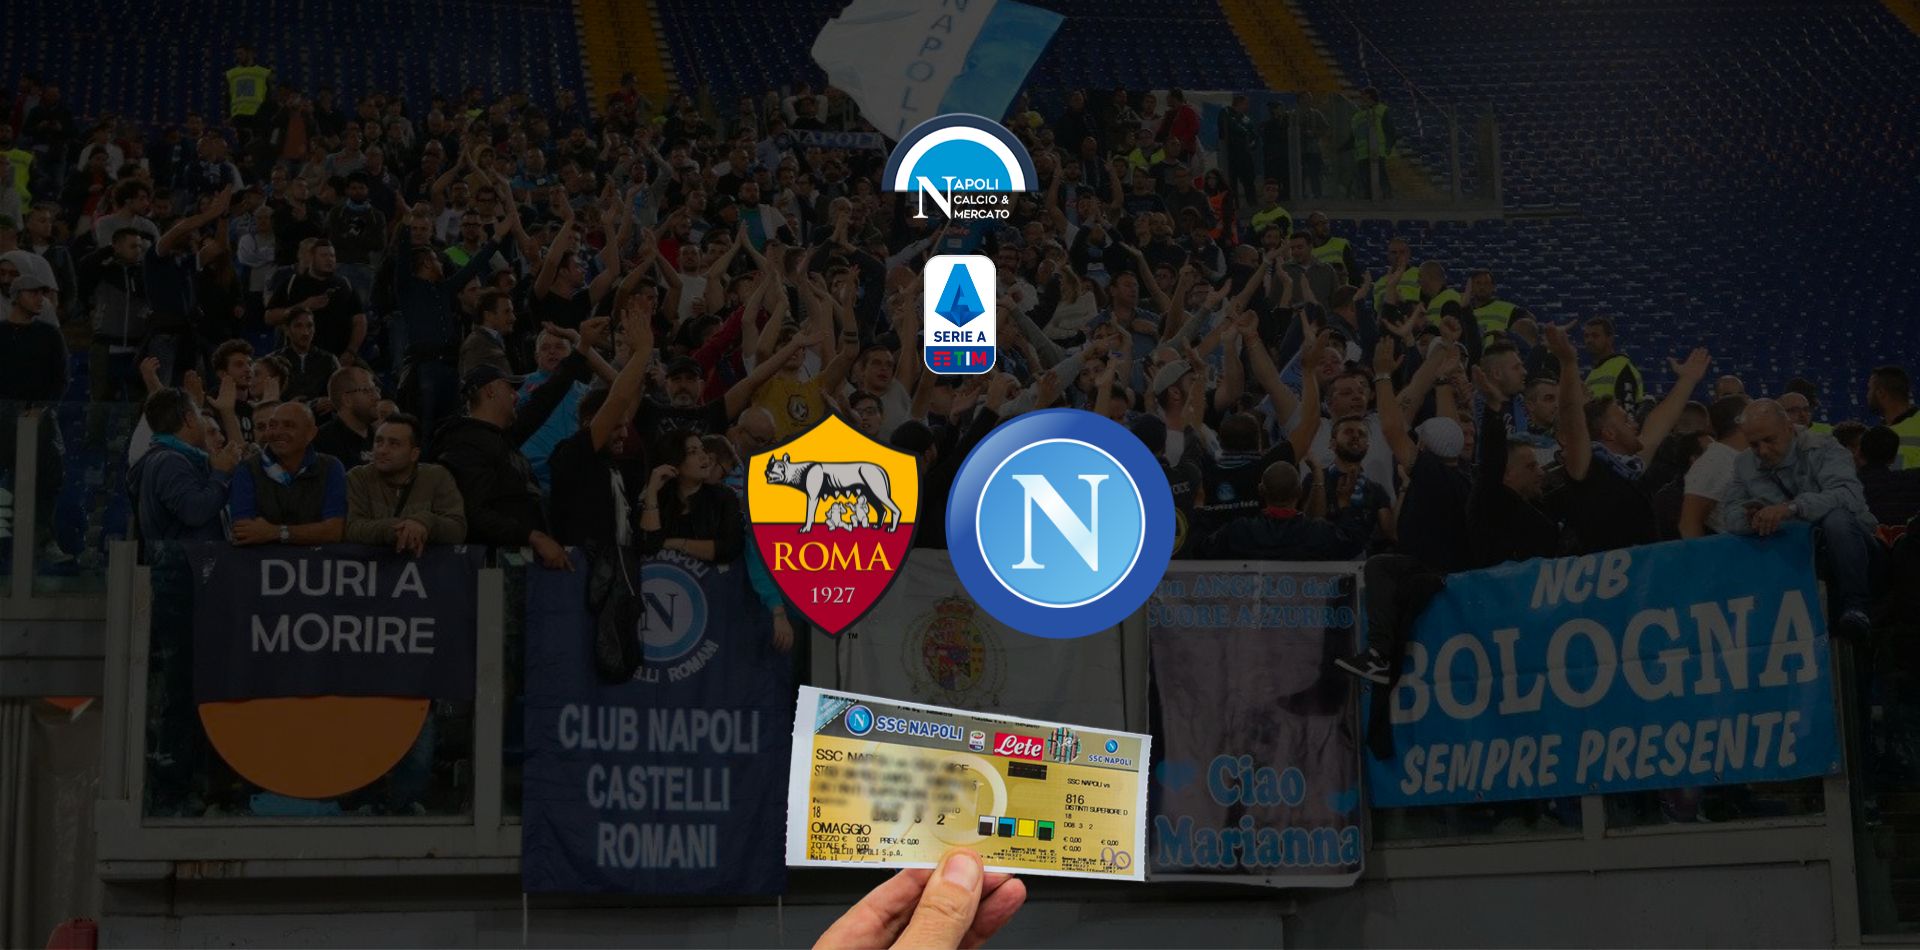 biglietti roma napoli stadio olimpico 23 ottobre 2022 settore ospiti prezzo